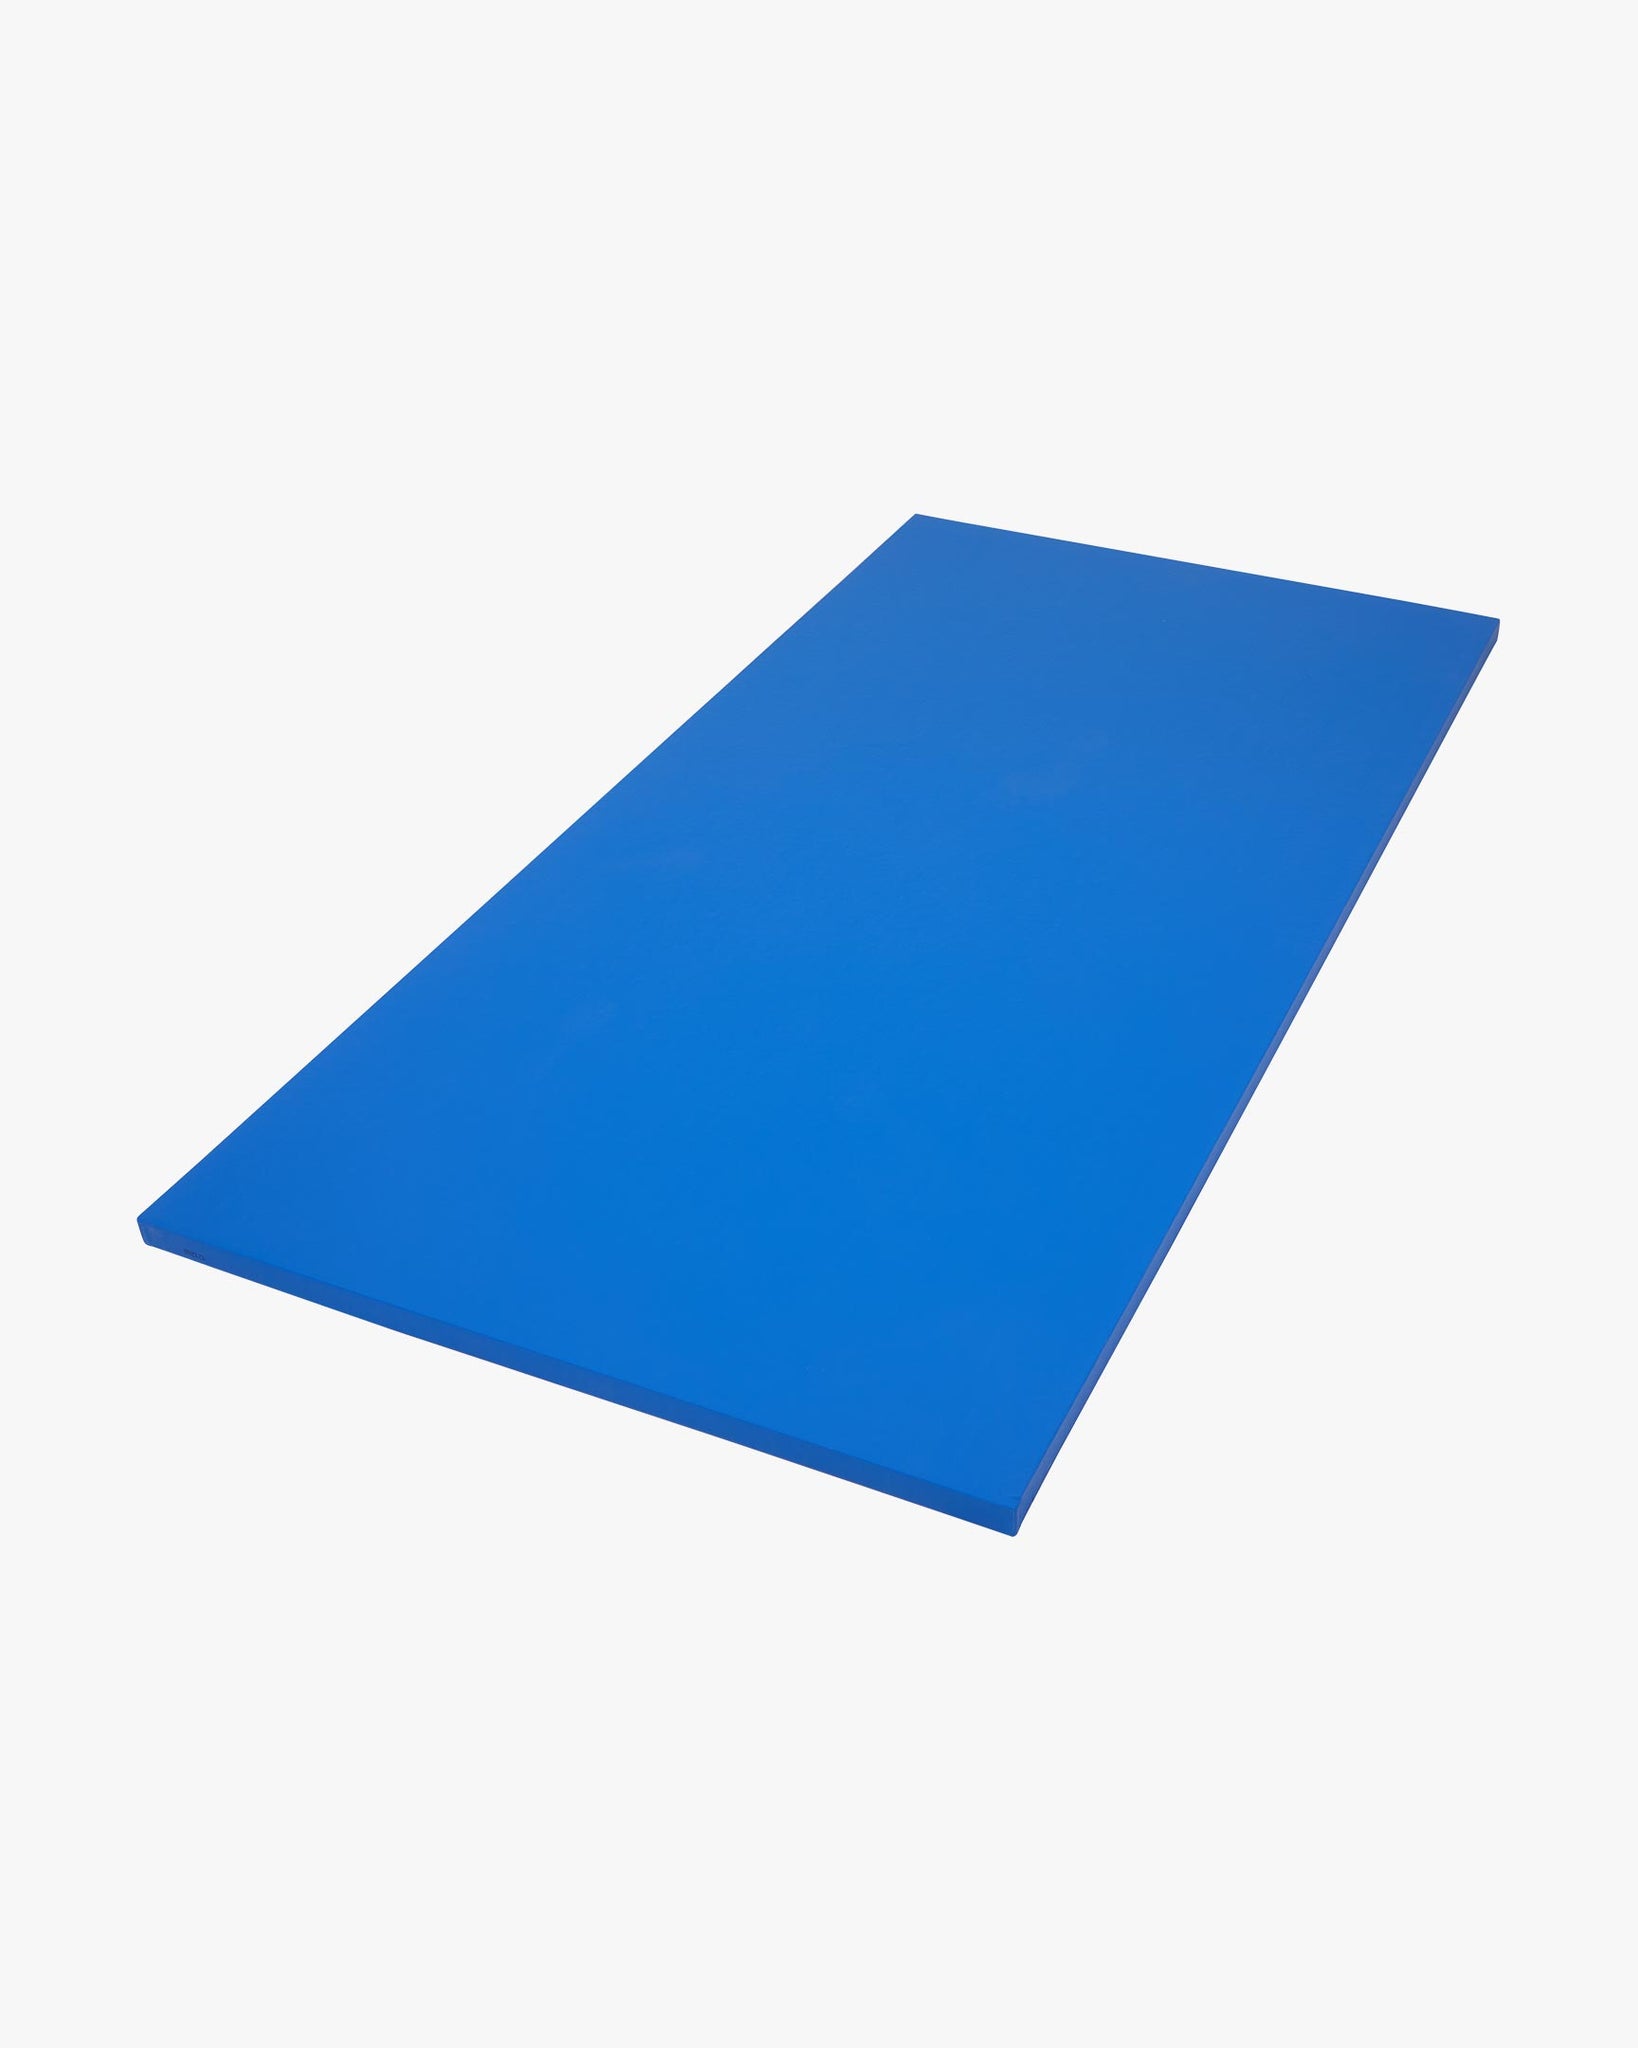 Smooth Tile Mat - 1m x 2m x 1.5" Blue